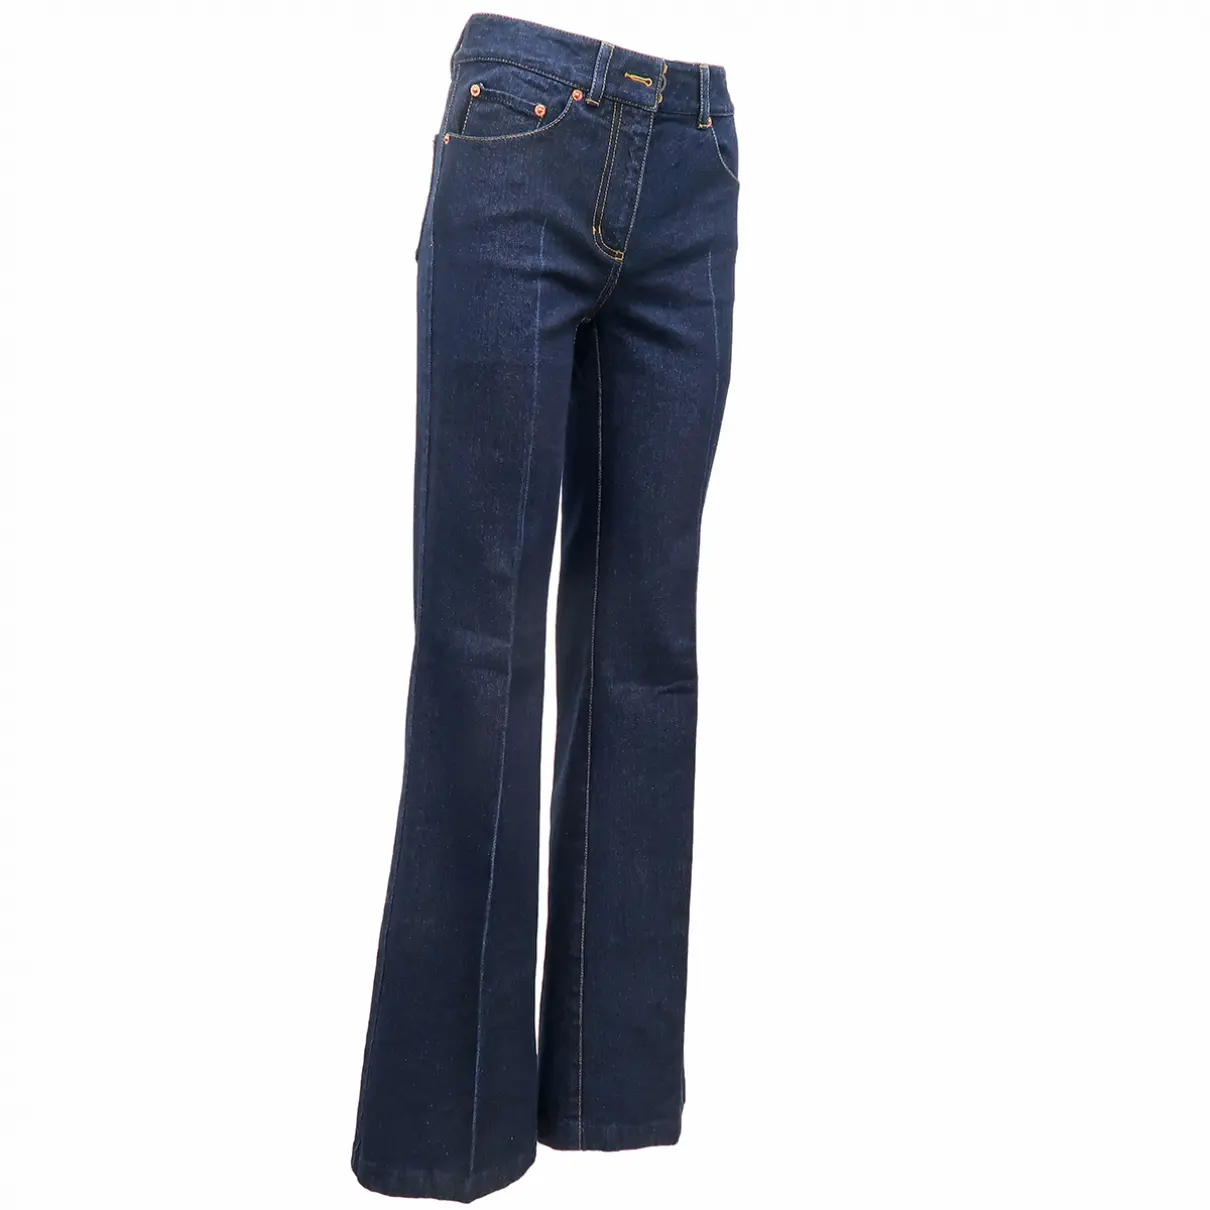 Blue Cotton Jeans 3.1 Phillip Lim